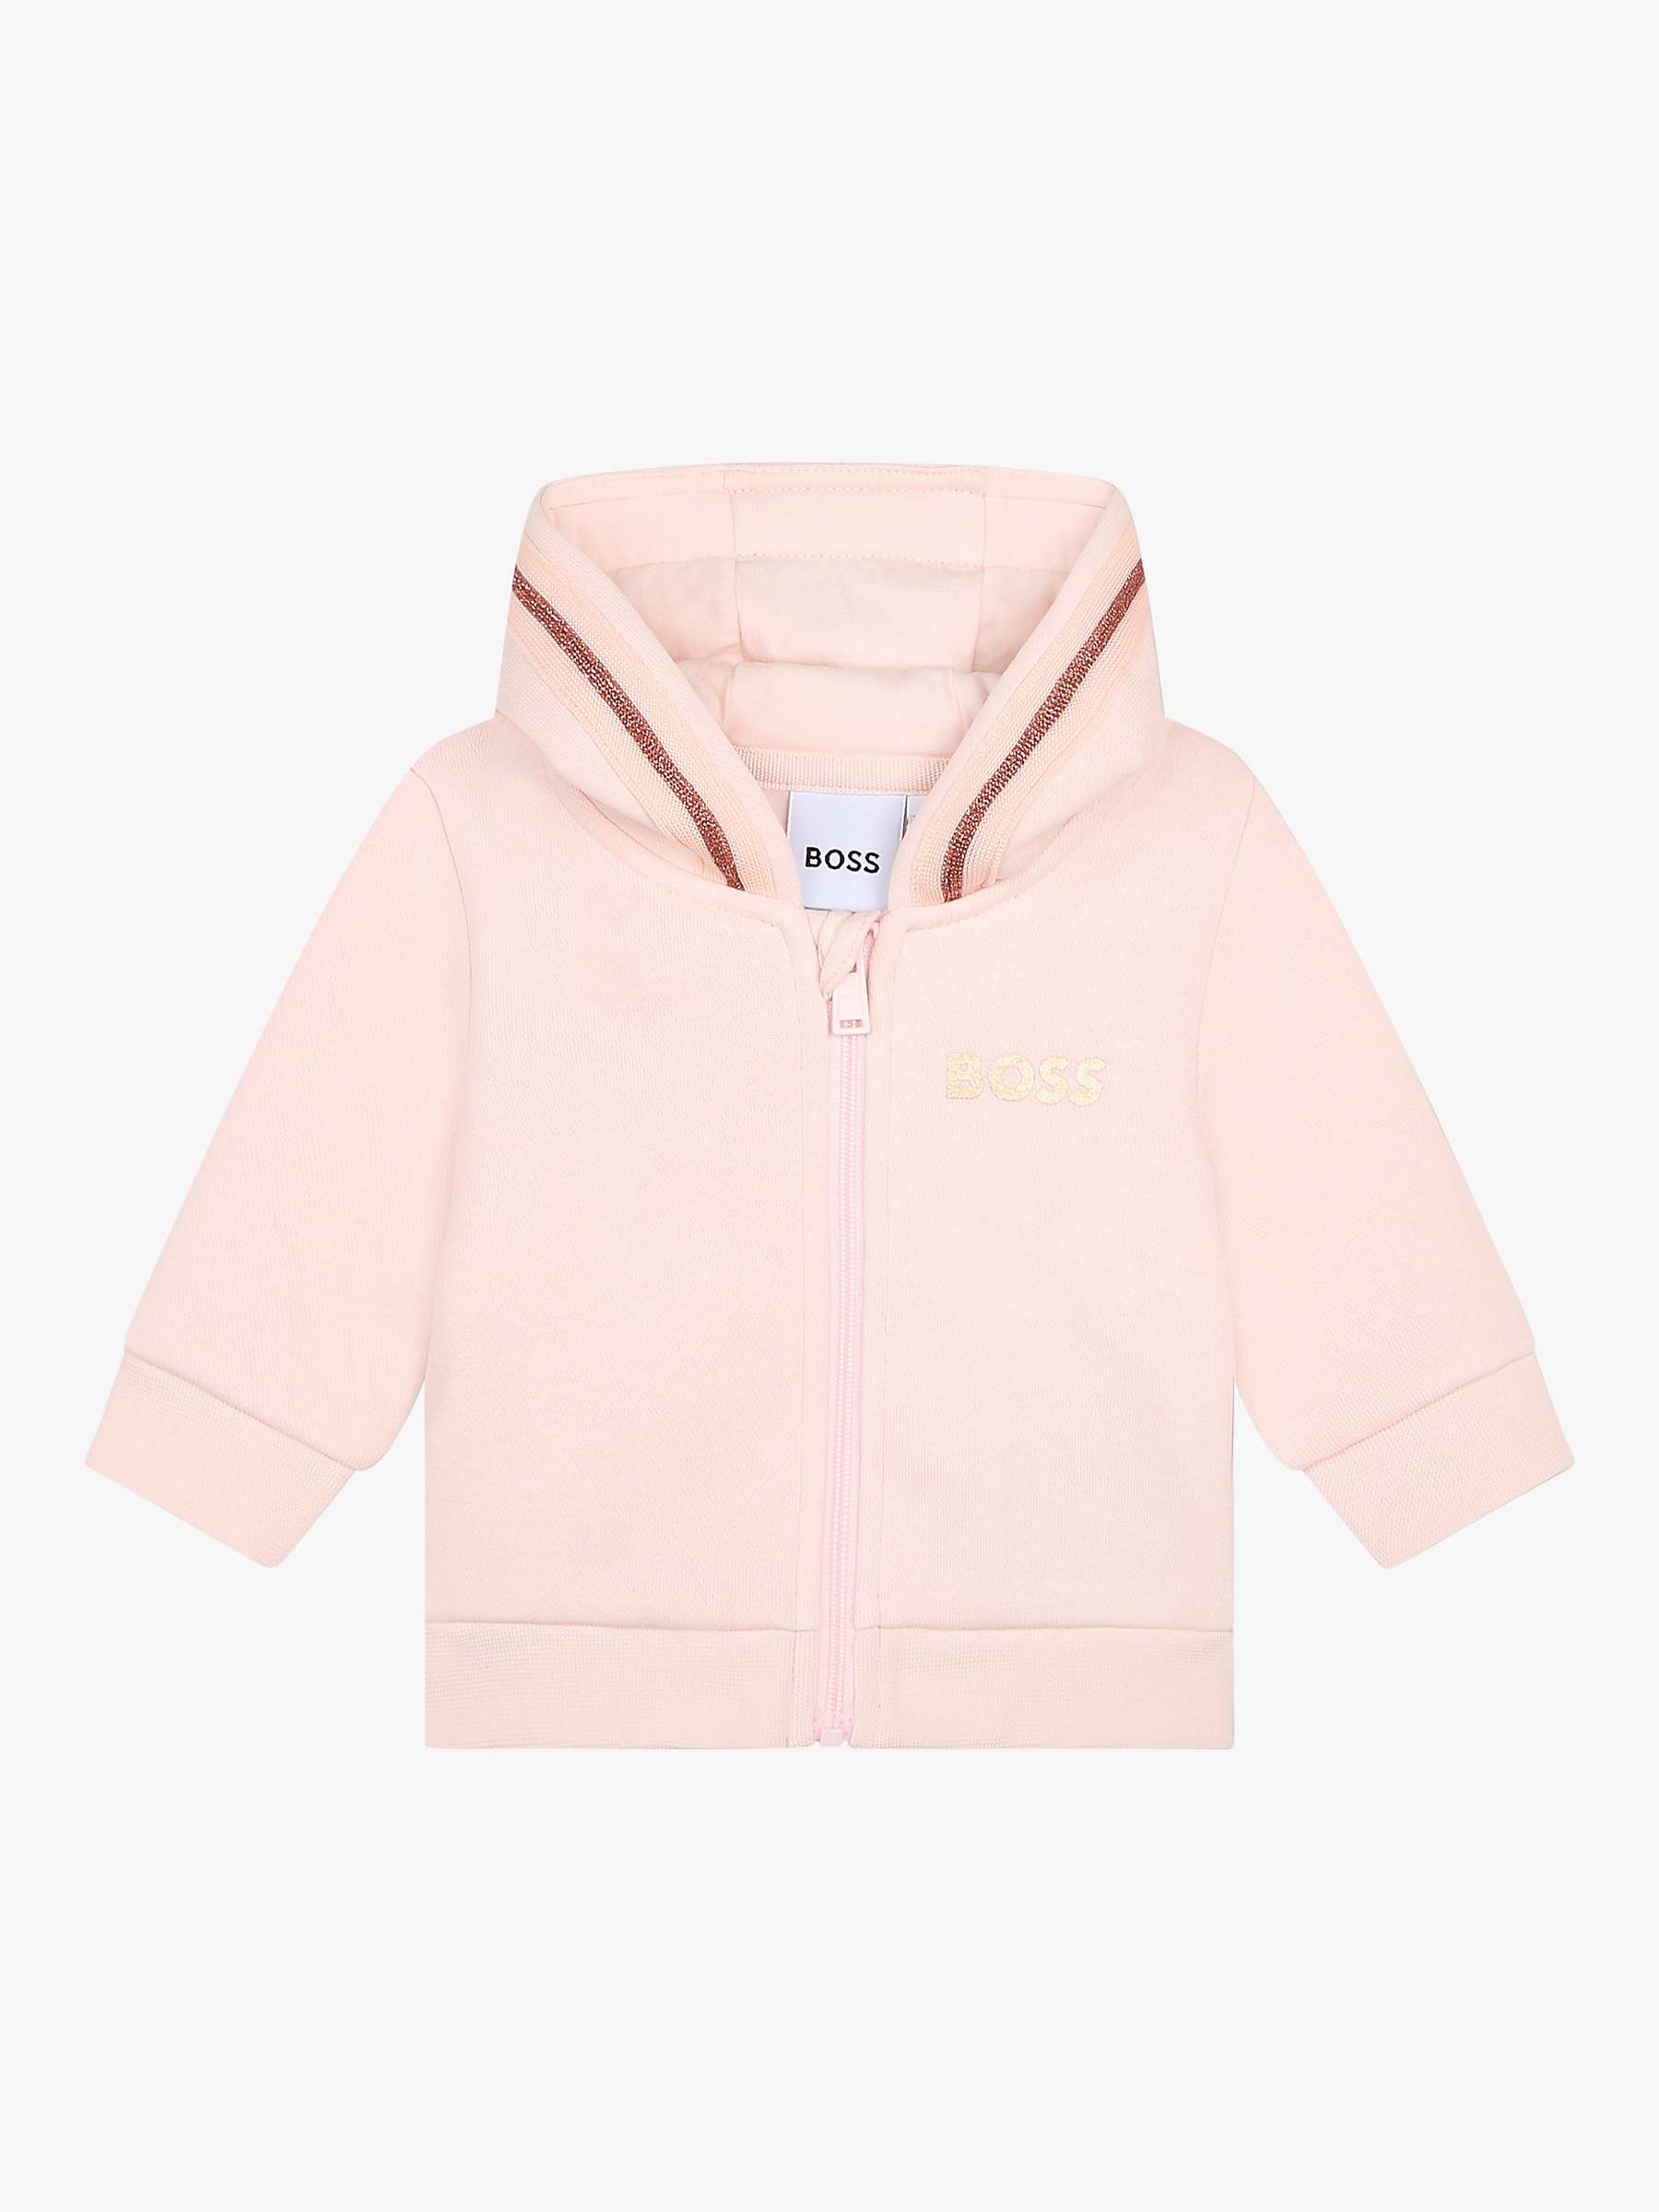 Buy BOSS Baby Fleece Zip Through Hooded Jogging Cardigan, Pink Online at johnlewis.com